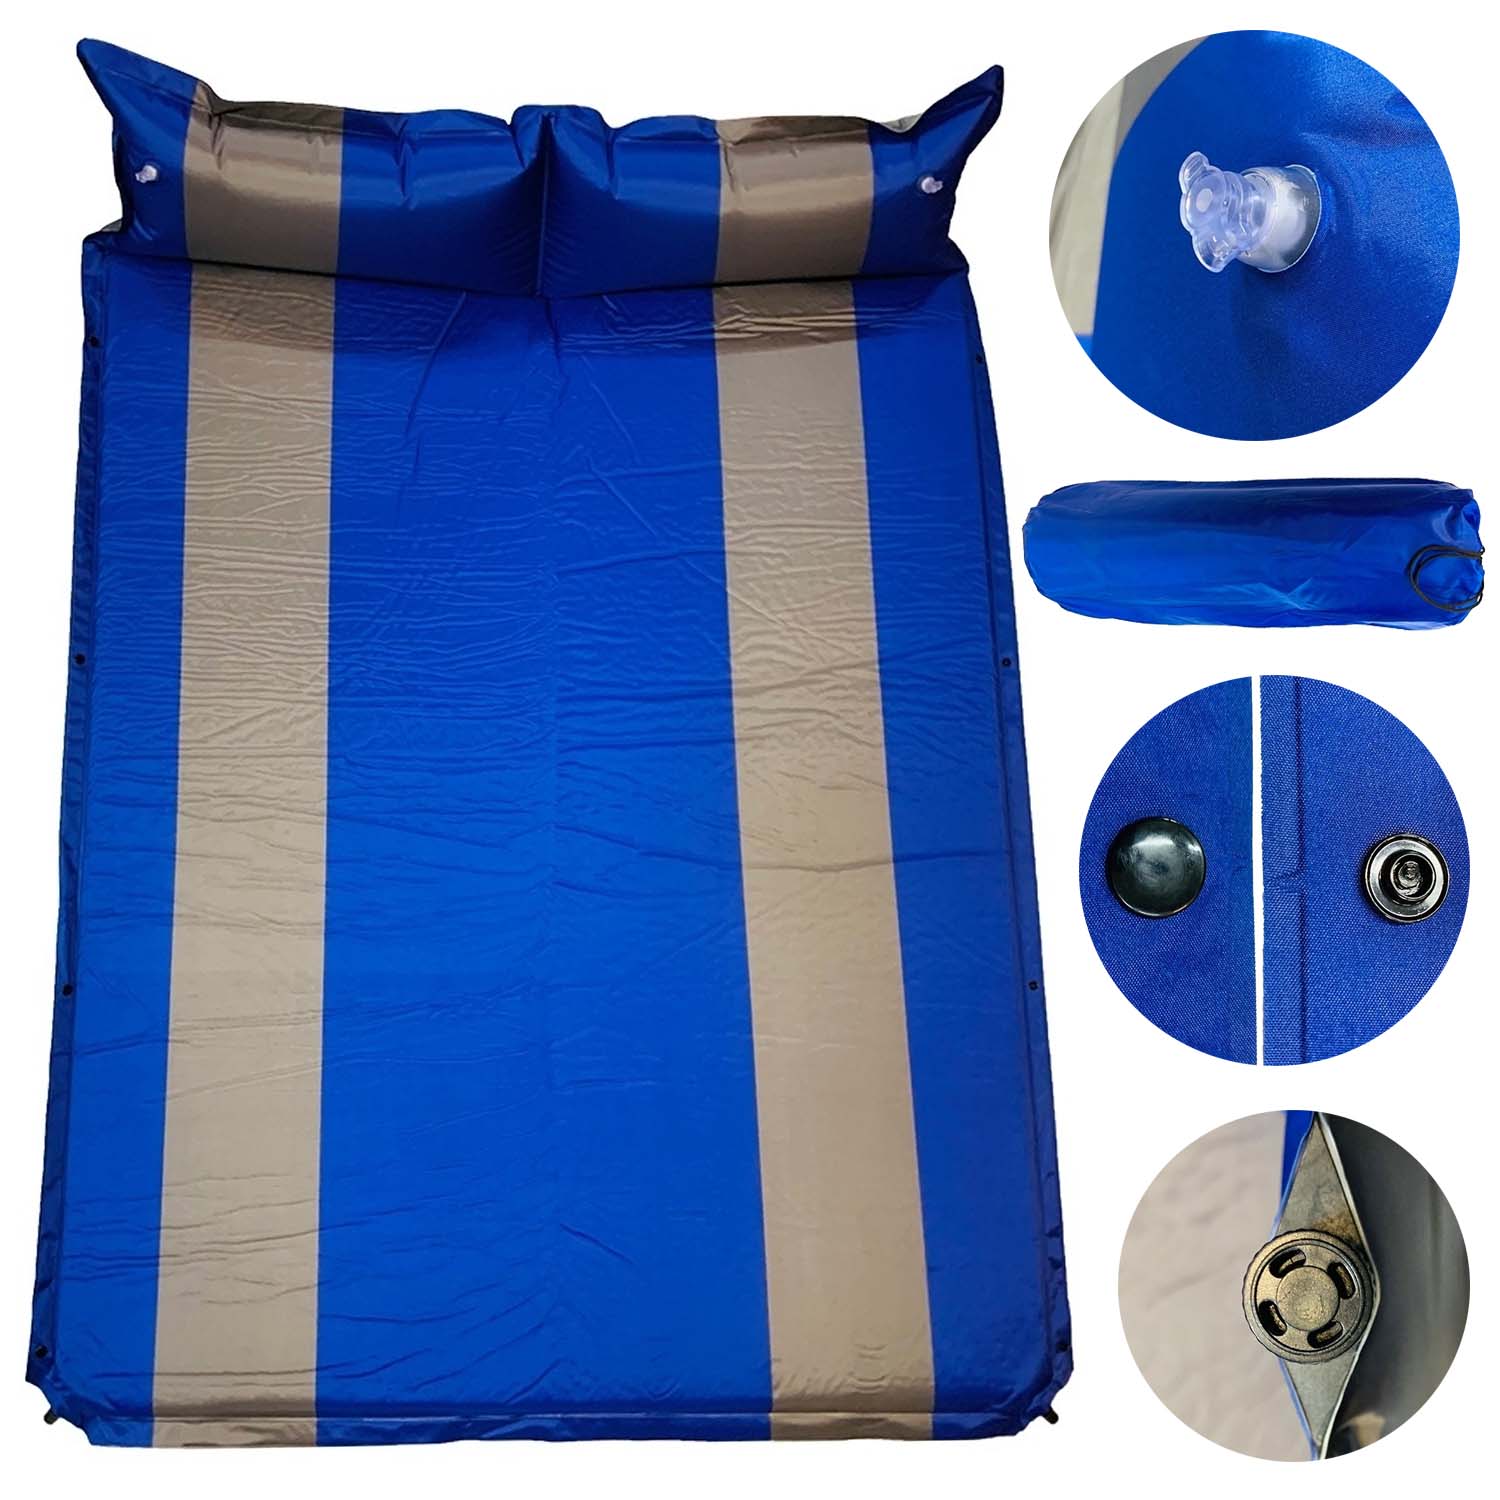 8(499)9387578 Купить матрас 2 местный надувной автоматический с подушками coolwalk 182*134*3 см темно синий от  - заказать